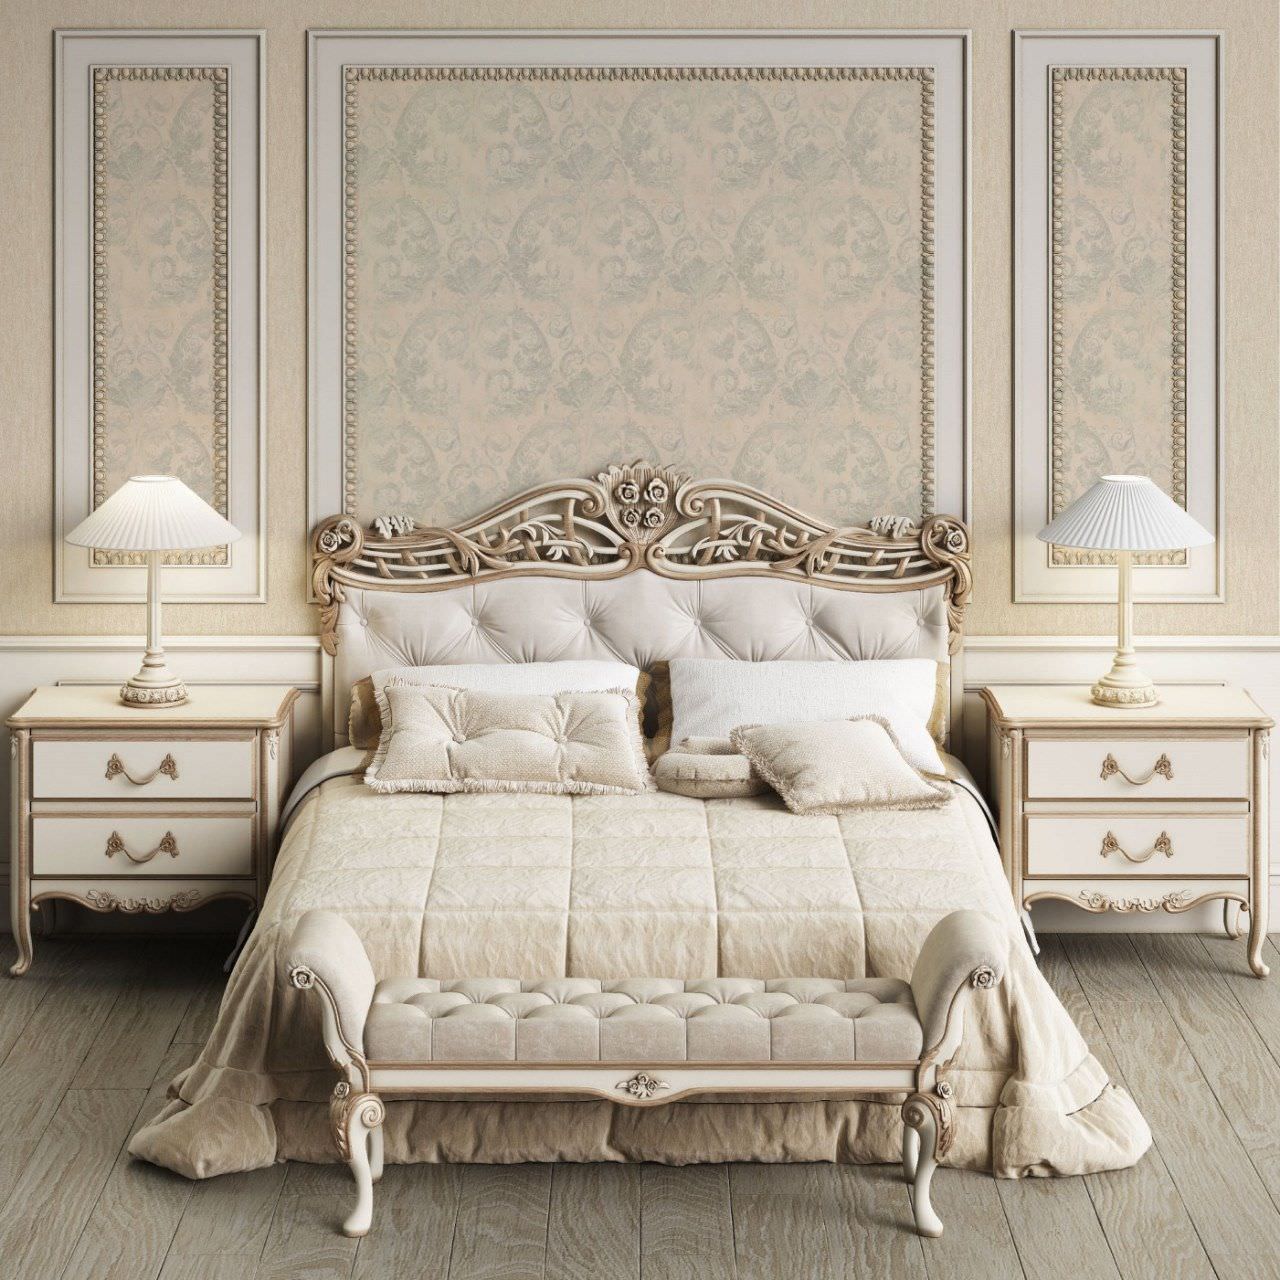 Nội thất phòng ngủ phong cách tân cổ điển luôn được khắc họa đường nét mềm mại